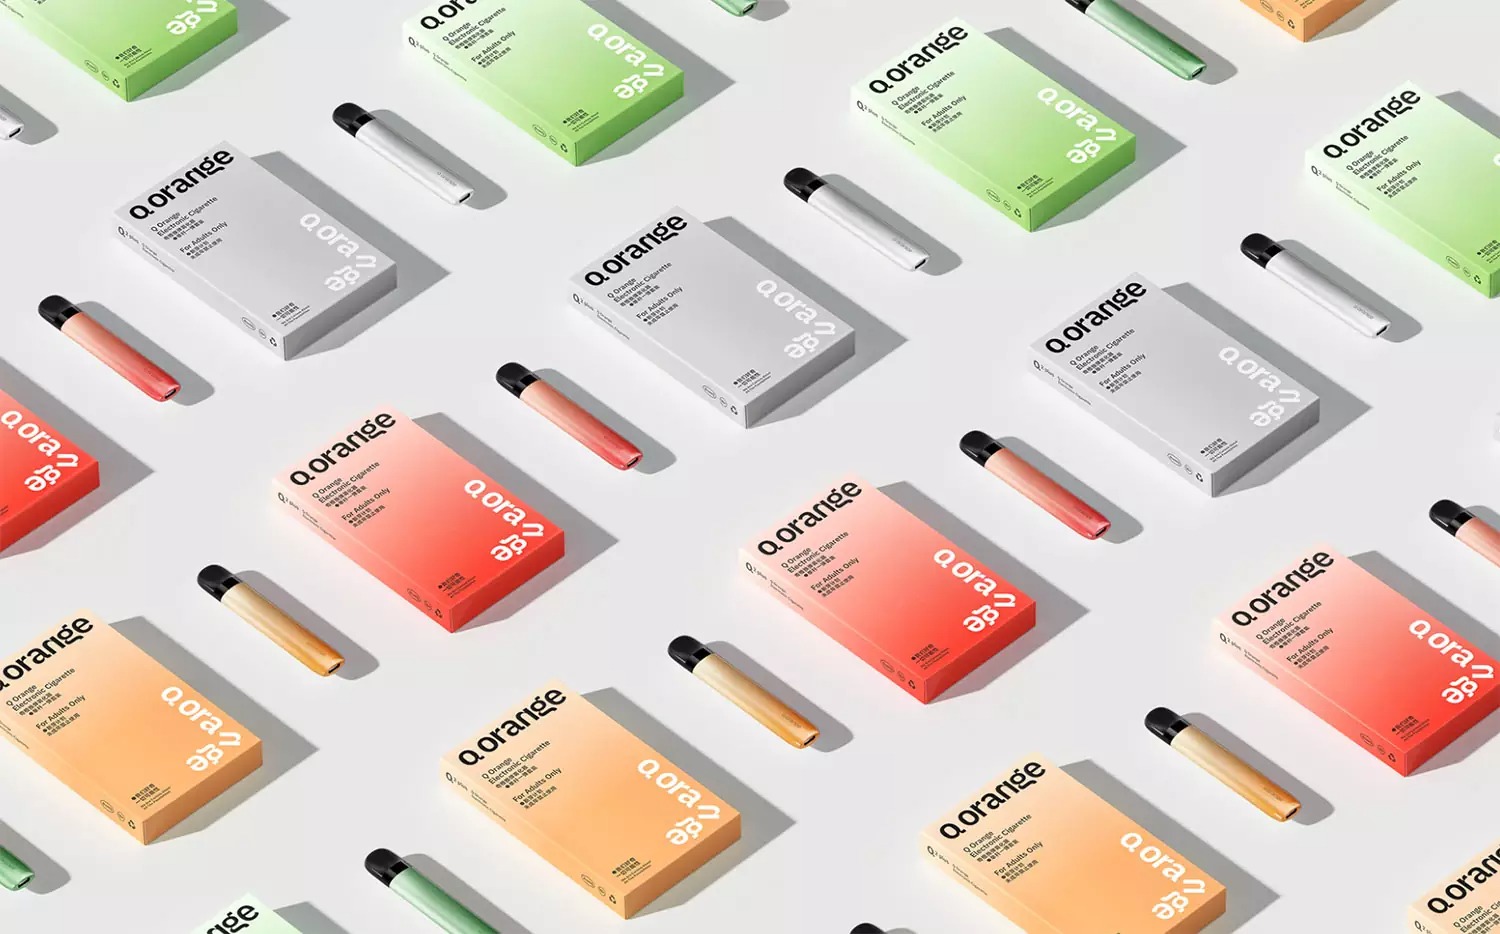 Q Orange电子烟品牌包装设计